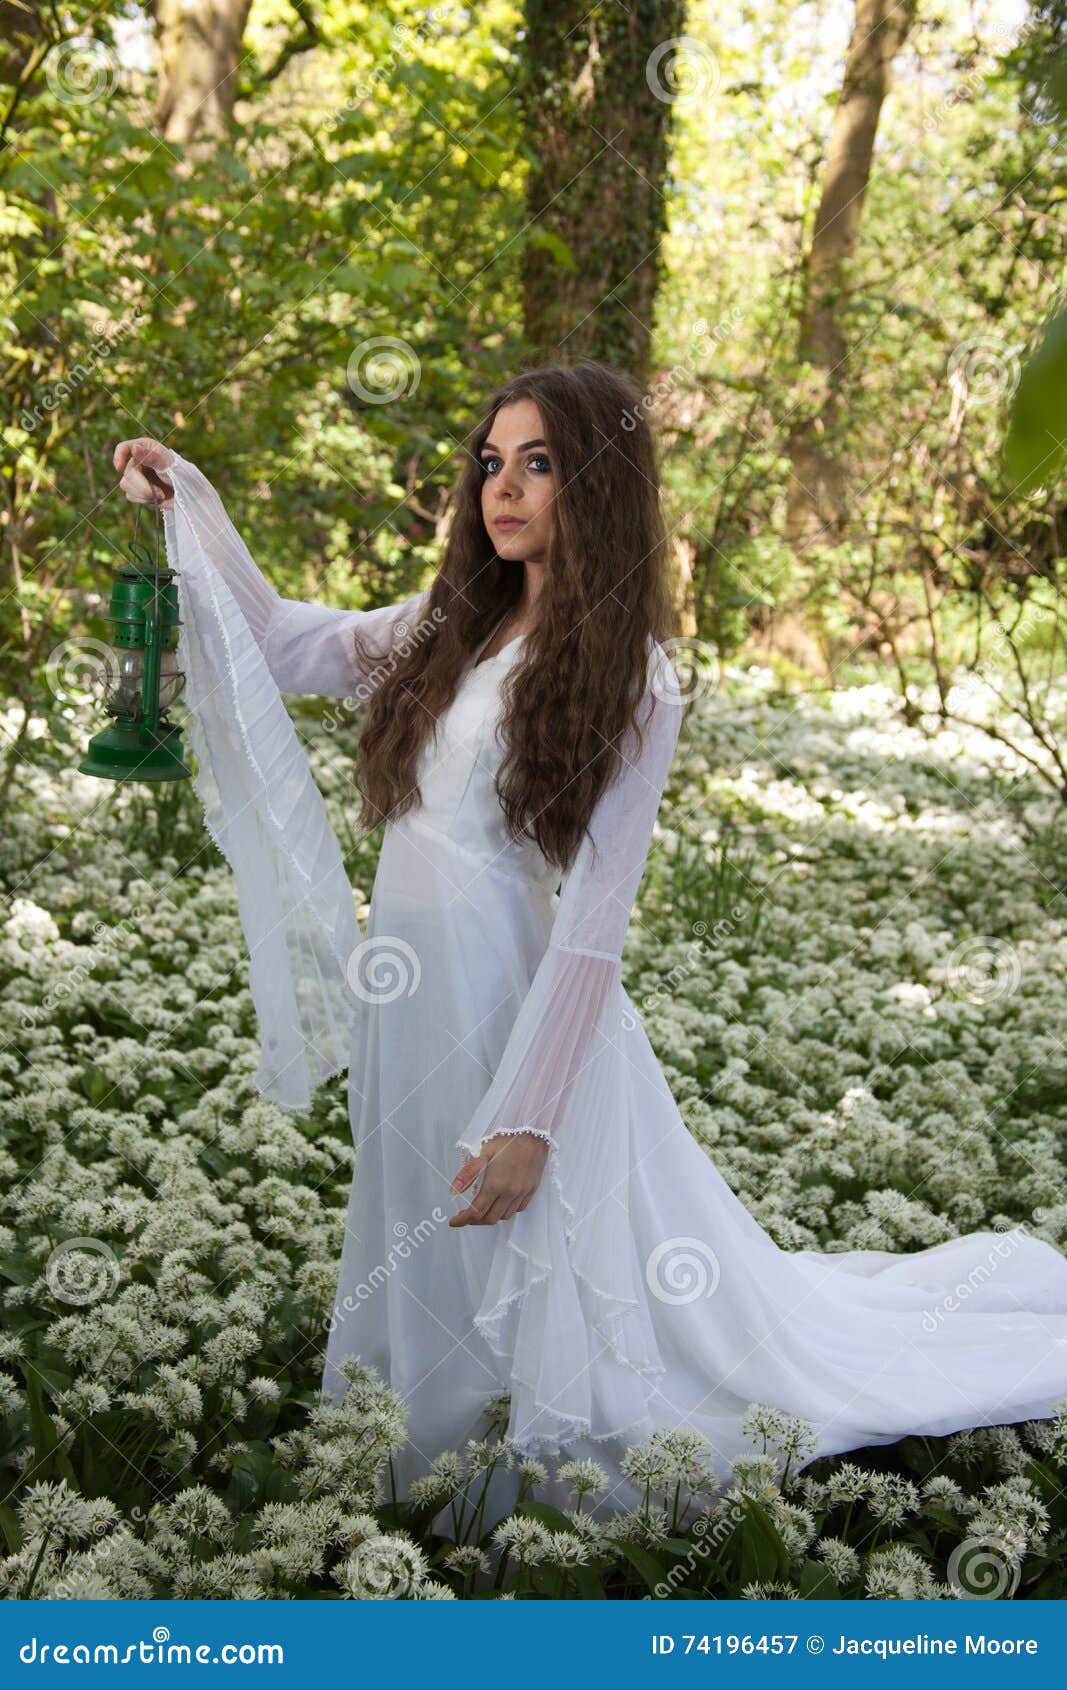 Όμορφη γυναίκα που φορά ένα μακρύ άσπρο φόρεμα που στέκεται σε ένα δάσος  Στοκ Εικόνα - εικόνα από wonderland, ancientness: 74196457